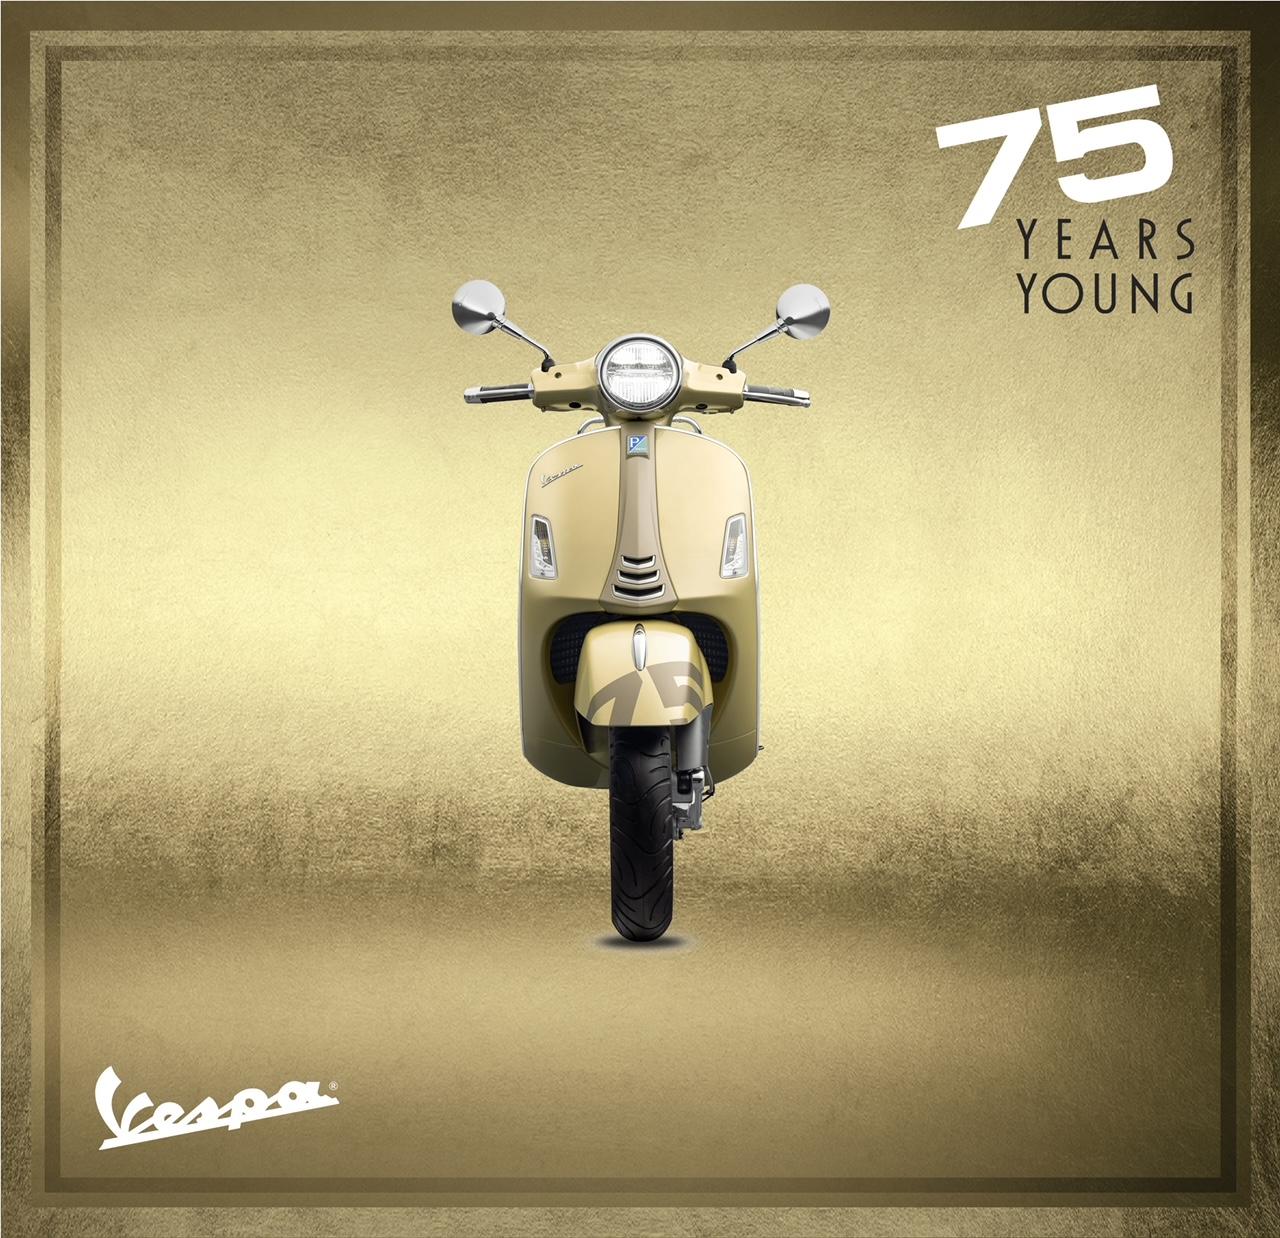 Piagio Việt Nam ra mắt phiên bản đặc biệt kỷ niệm sinh nhật Vespa 75 năm tuổi trẻ ảnh 2